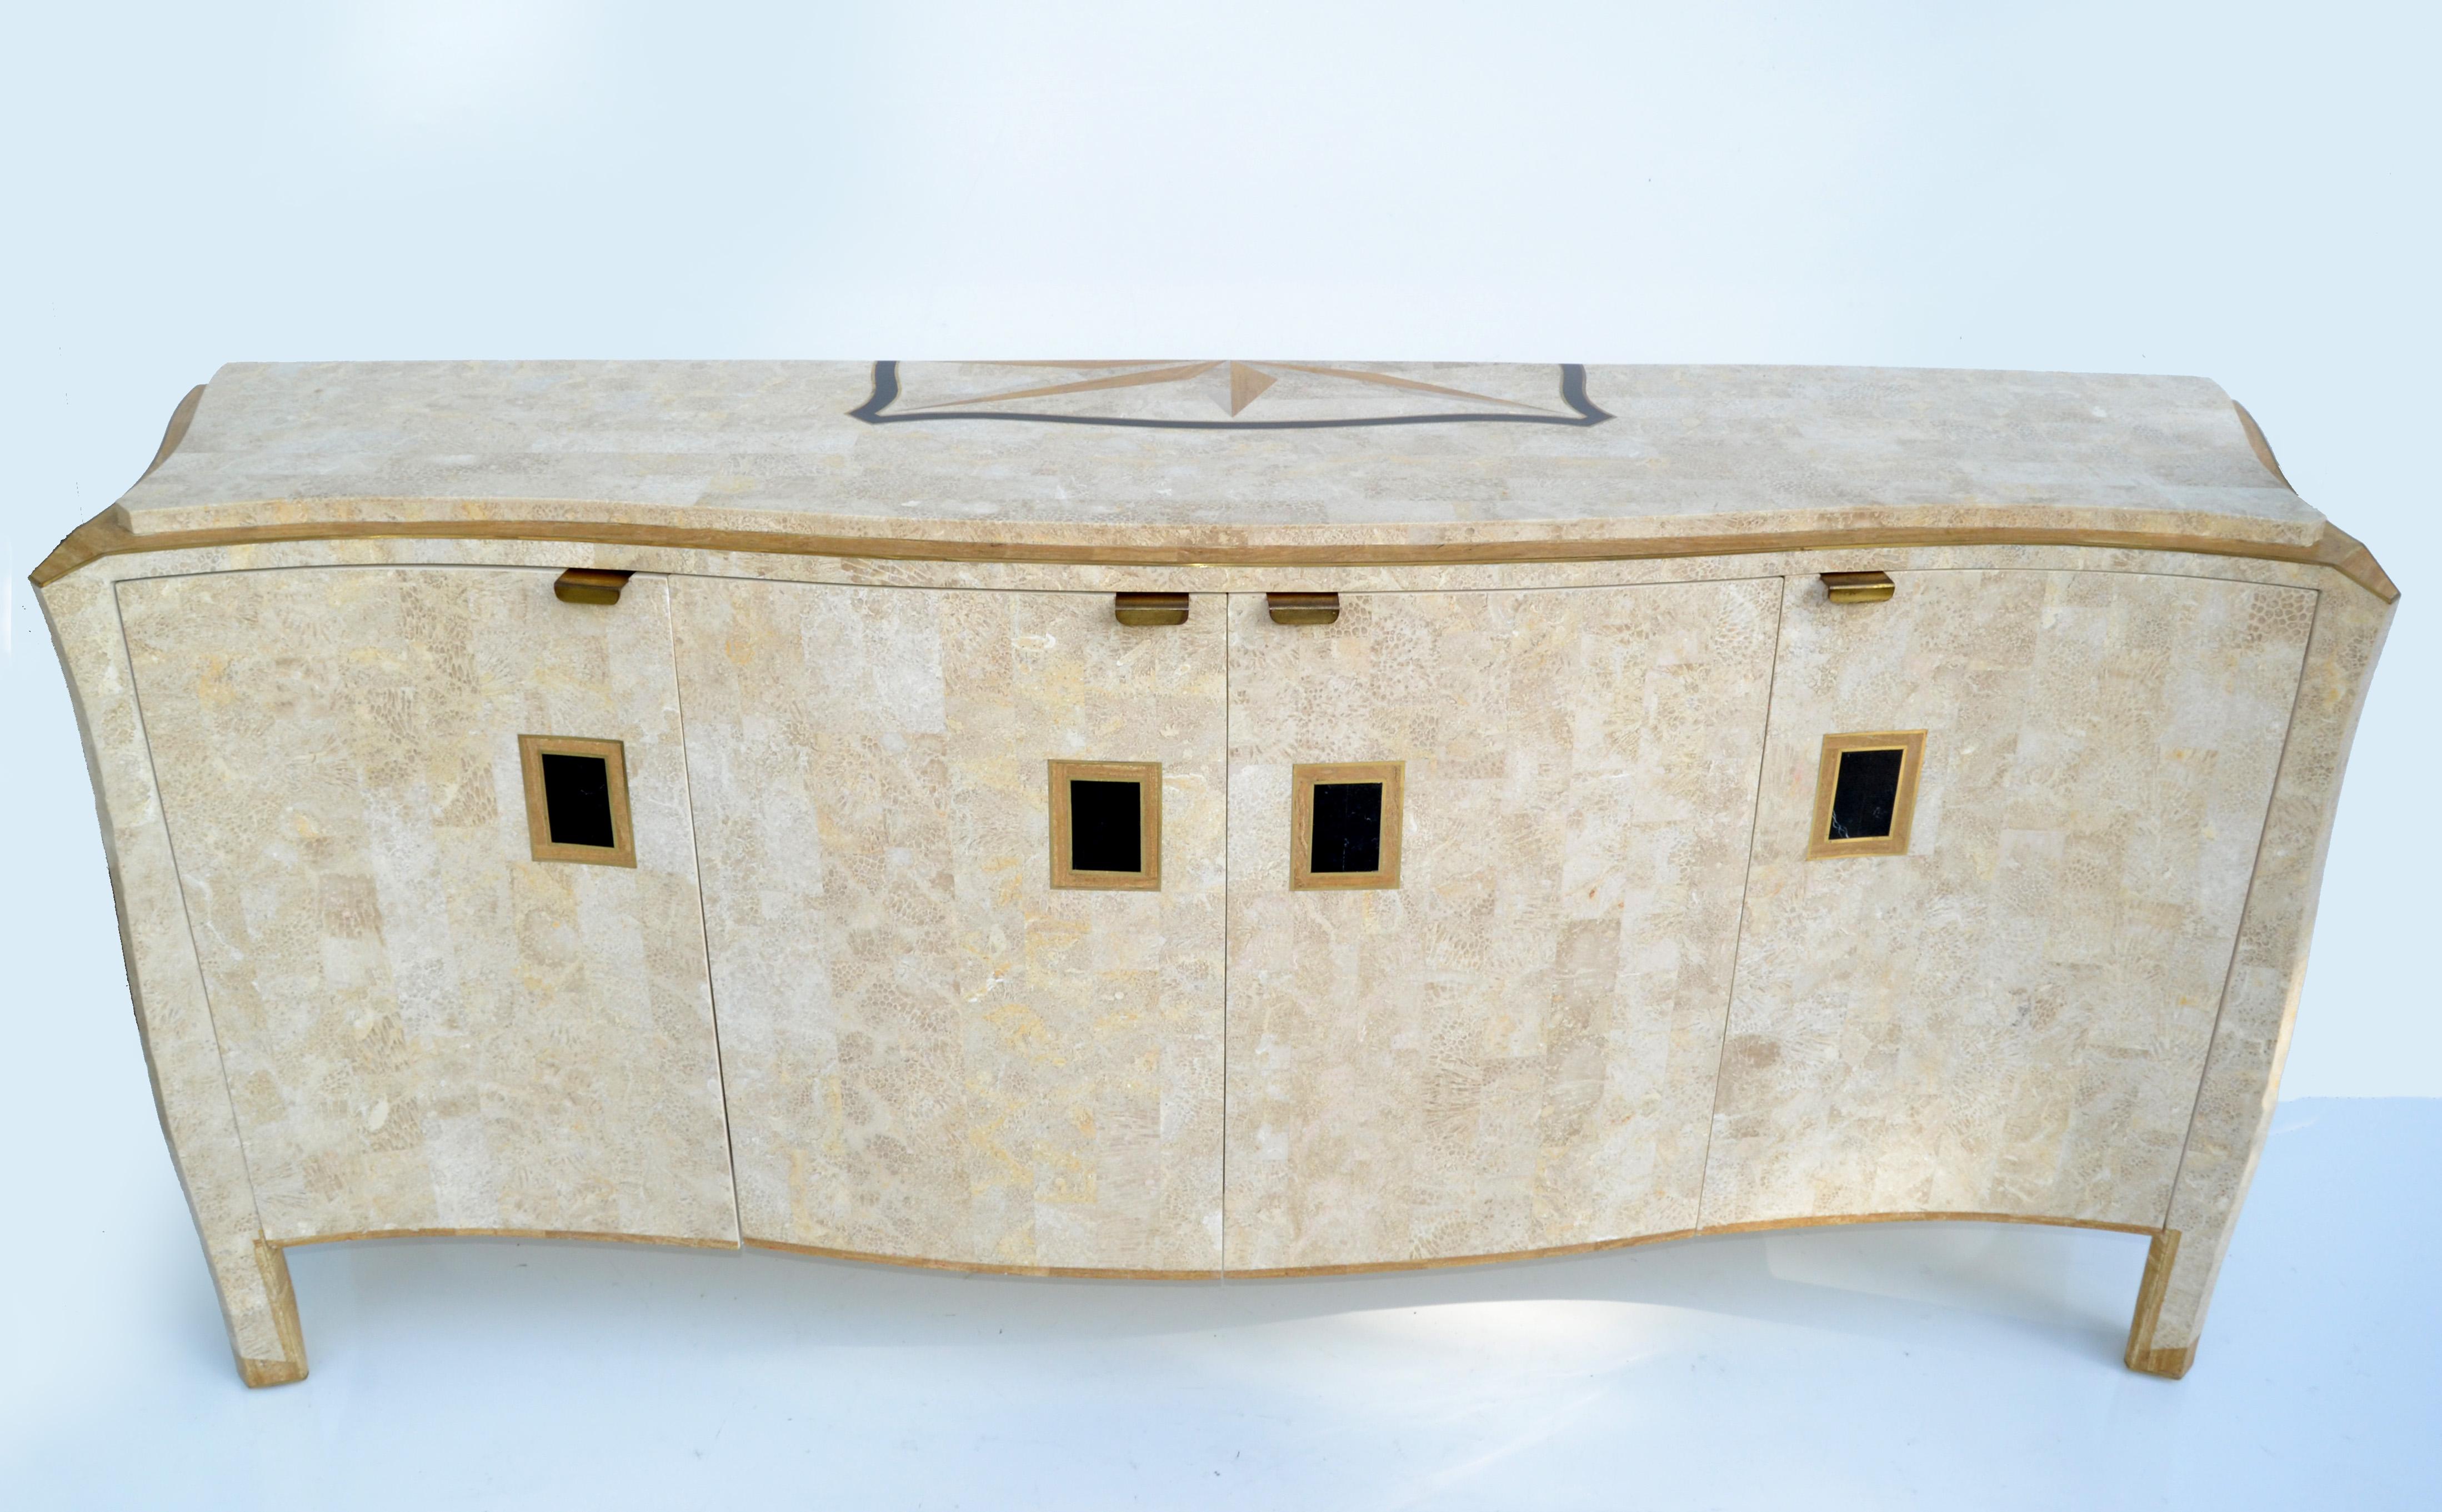 Monumental Credenza, Sideboard, Storage Cabinet von Maitland Smith Mid-Century Modern Design schwere solide gefertigt und in den Philippinen gemacht. 
Aus mosaikartigem Stein über Holz mit Messinggriffen und -leisten sowie